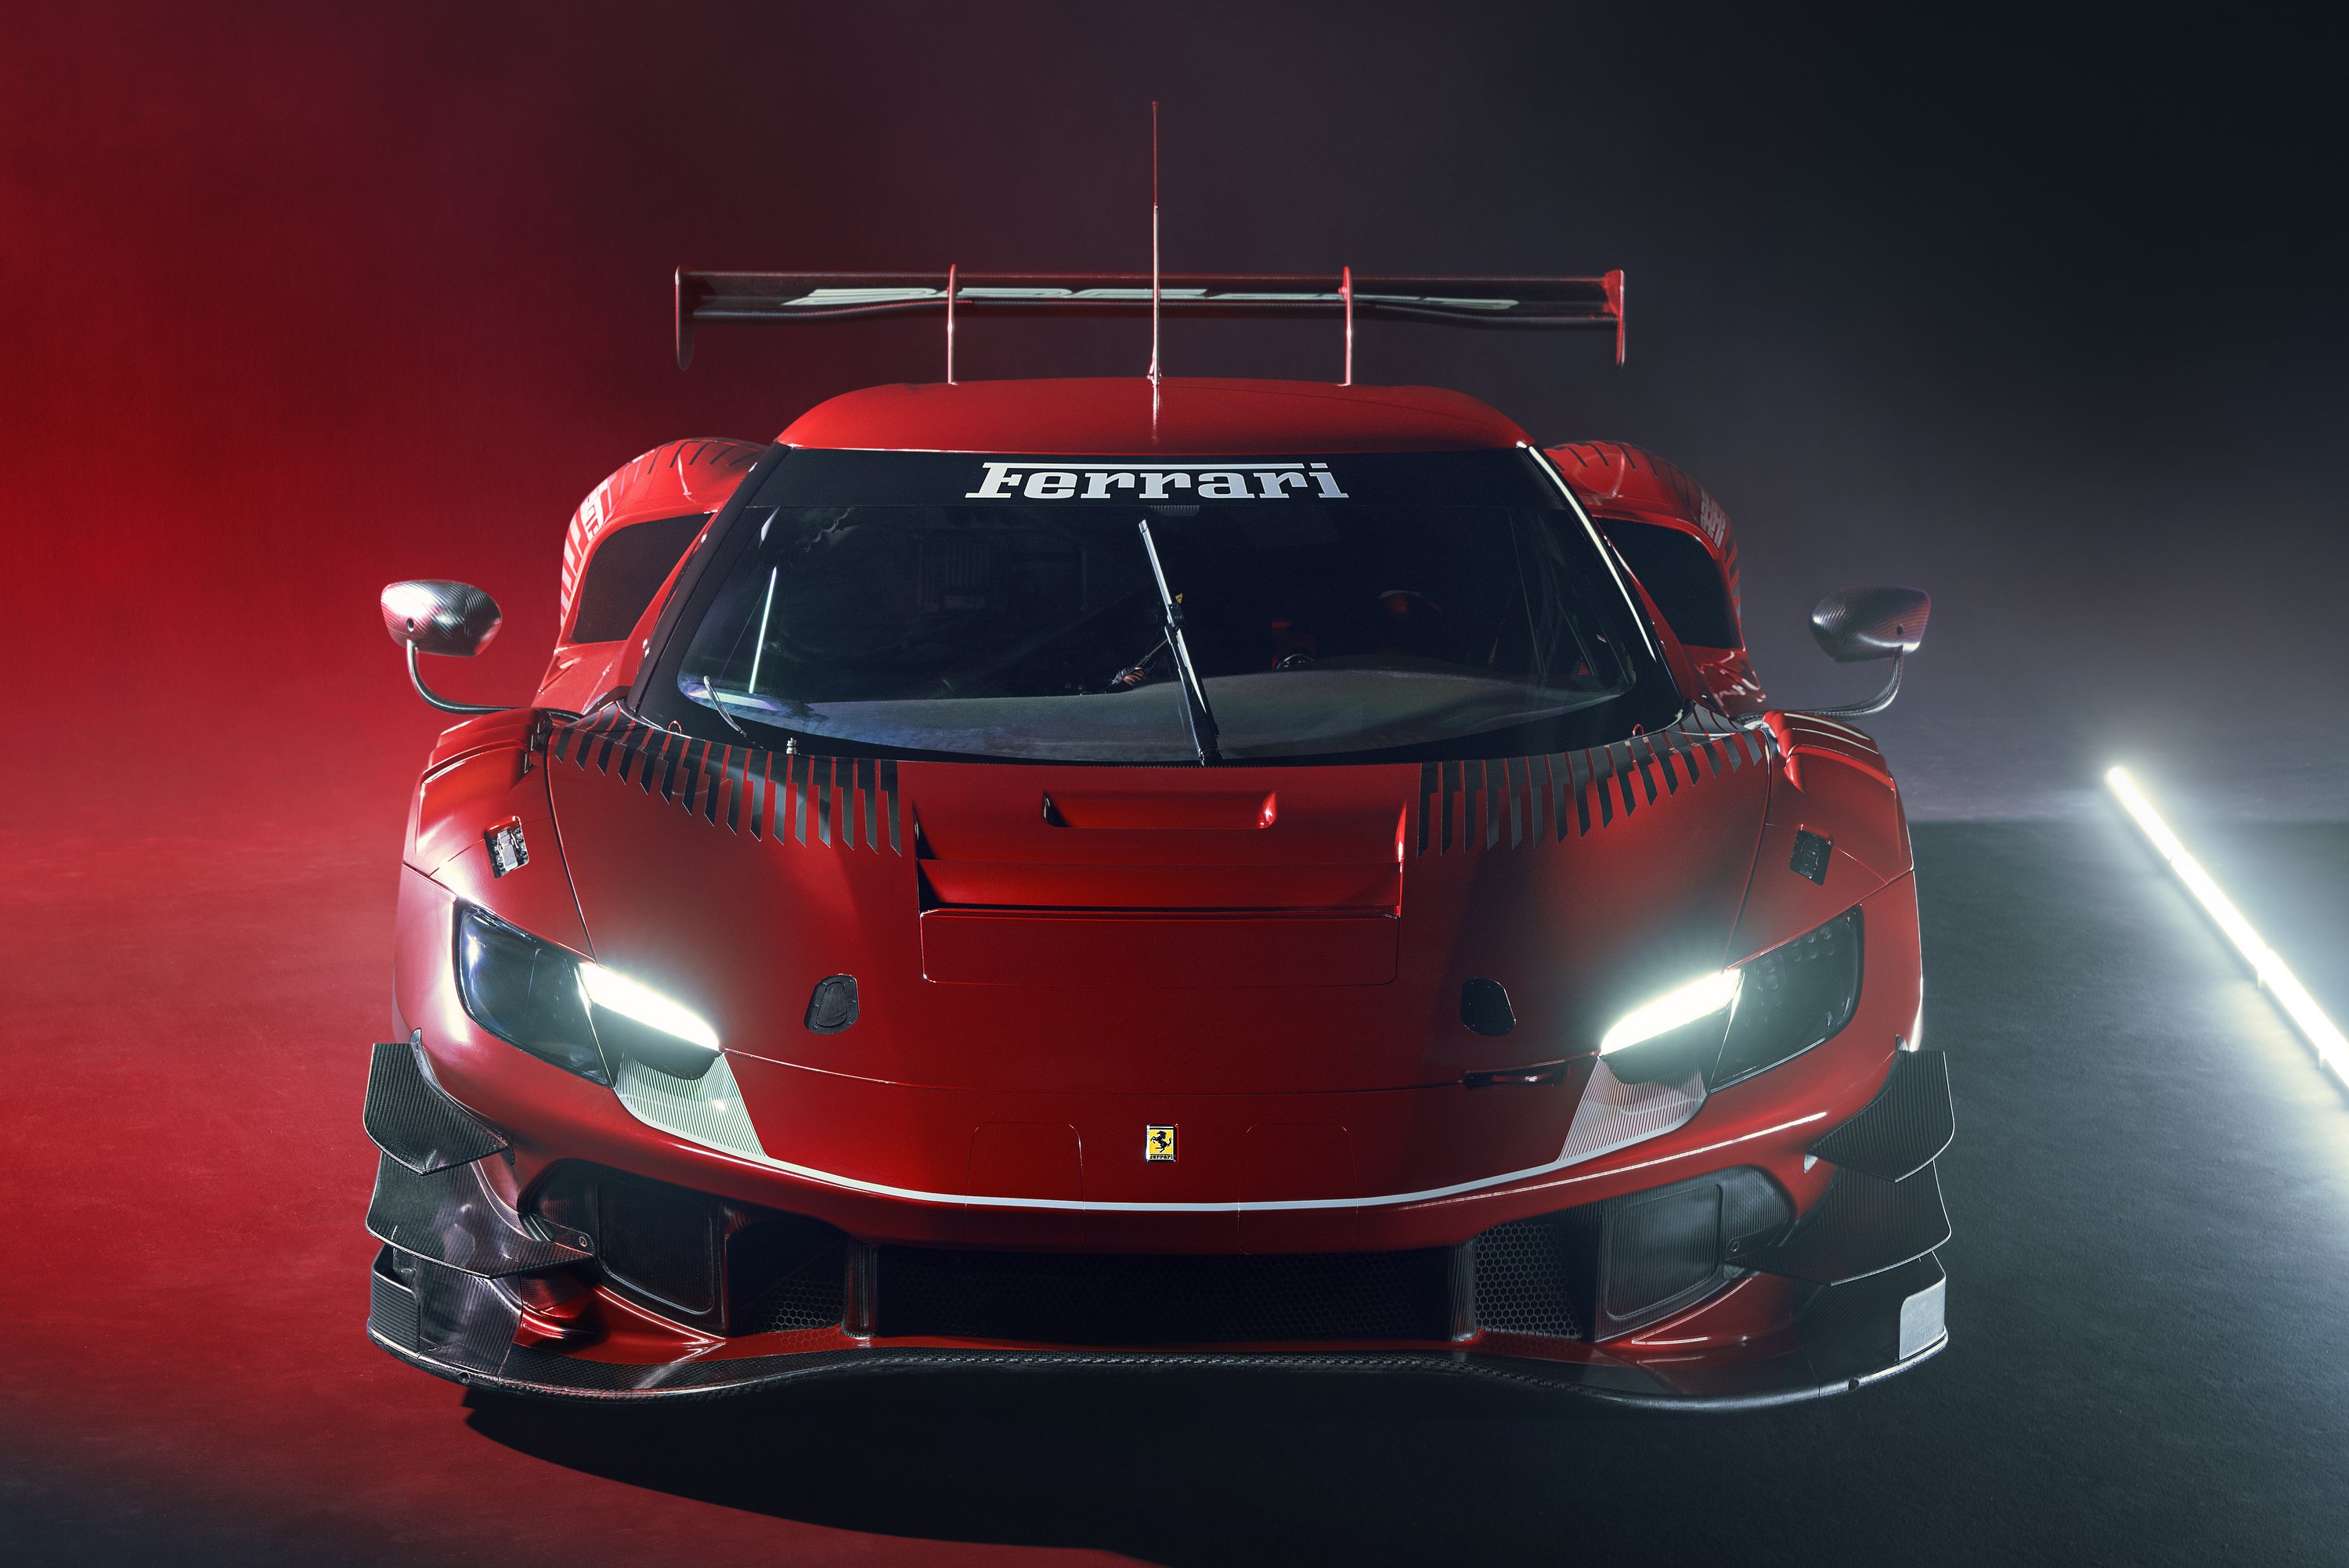 Itt az új Ferrari, nem az ereje adja el 4